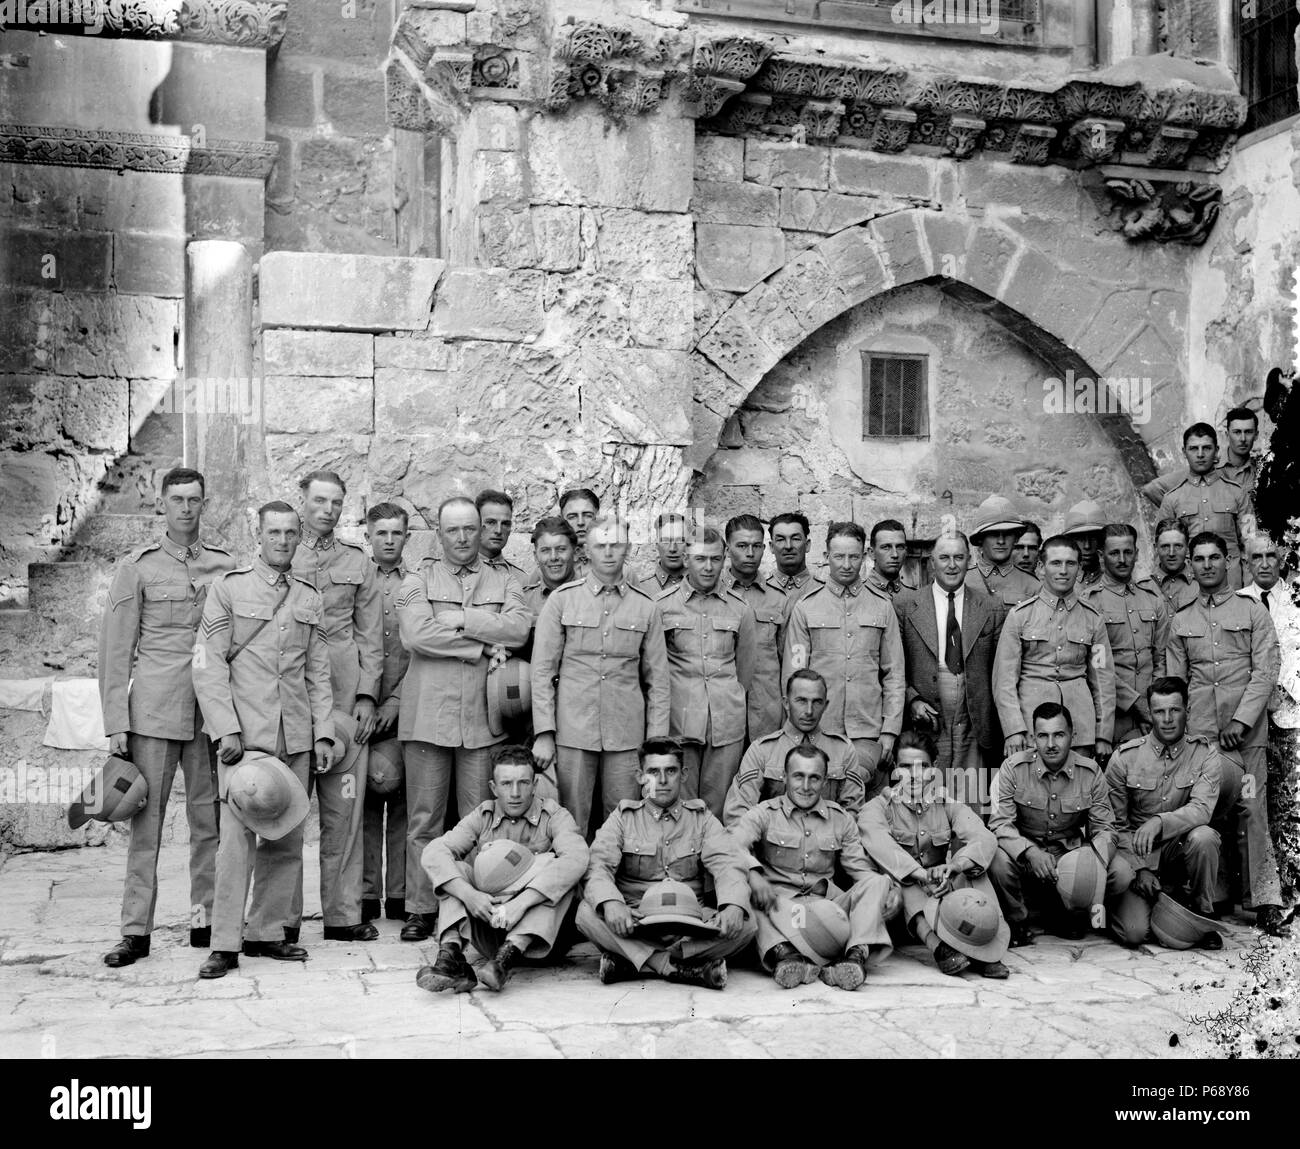 Foto von einem britischen Militär Gruppe in Jerusalem im Innenhof des Heiligen Grabes kirche während des Mandats in Palästina. Vom 1920 Stockfoto